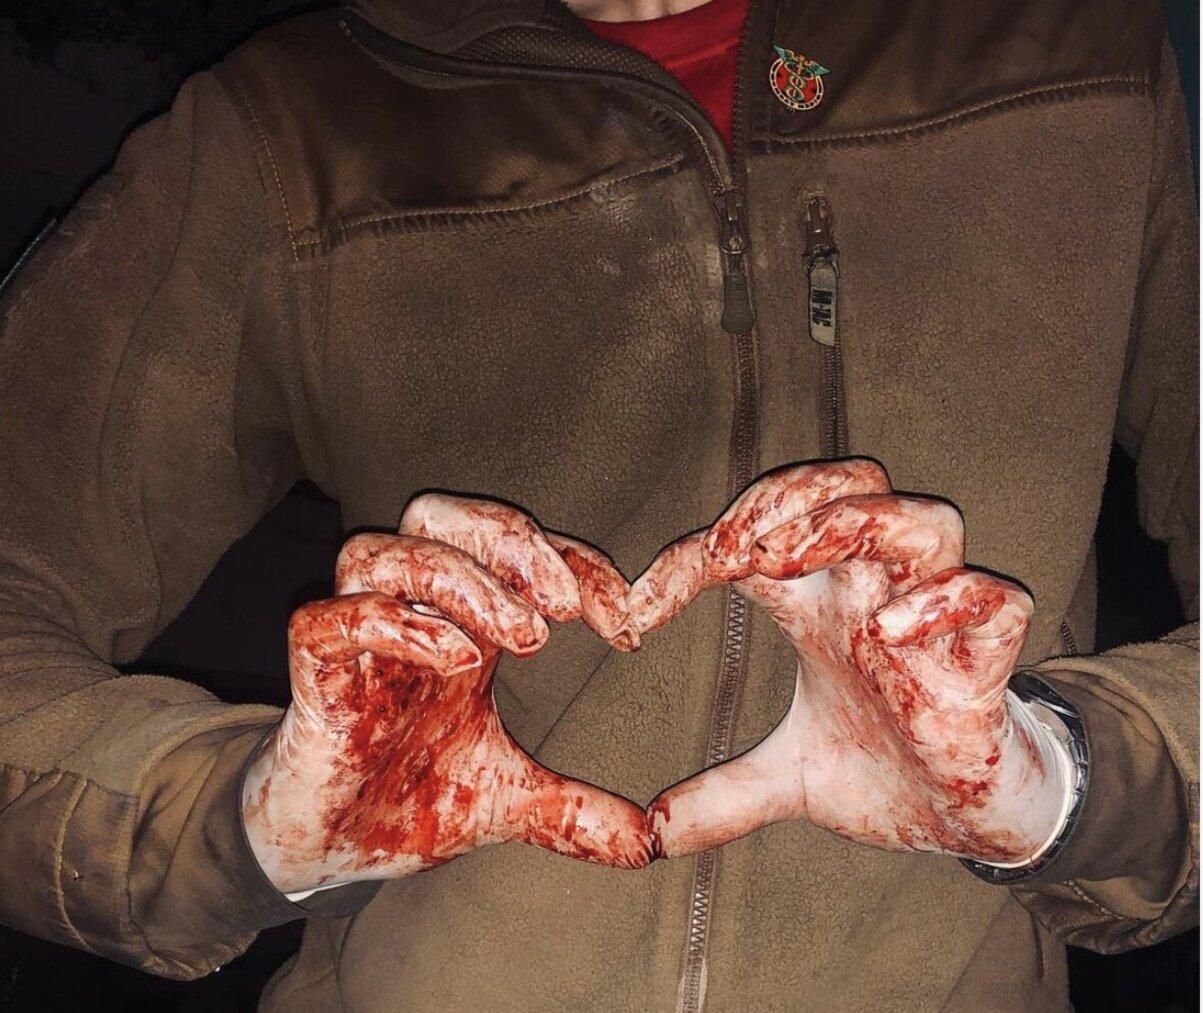 Фото медика "Азова" с окровавленными перчатками покорило сеть